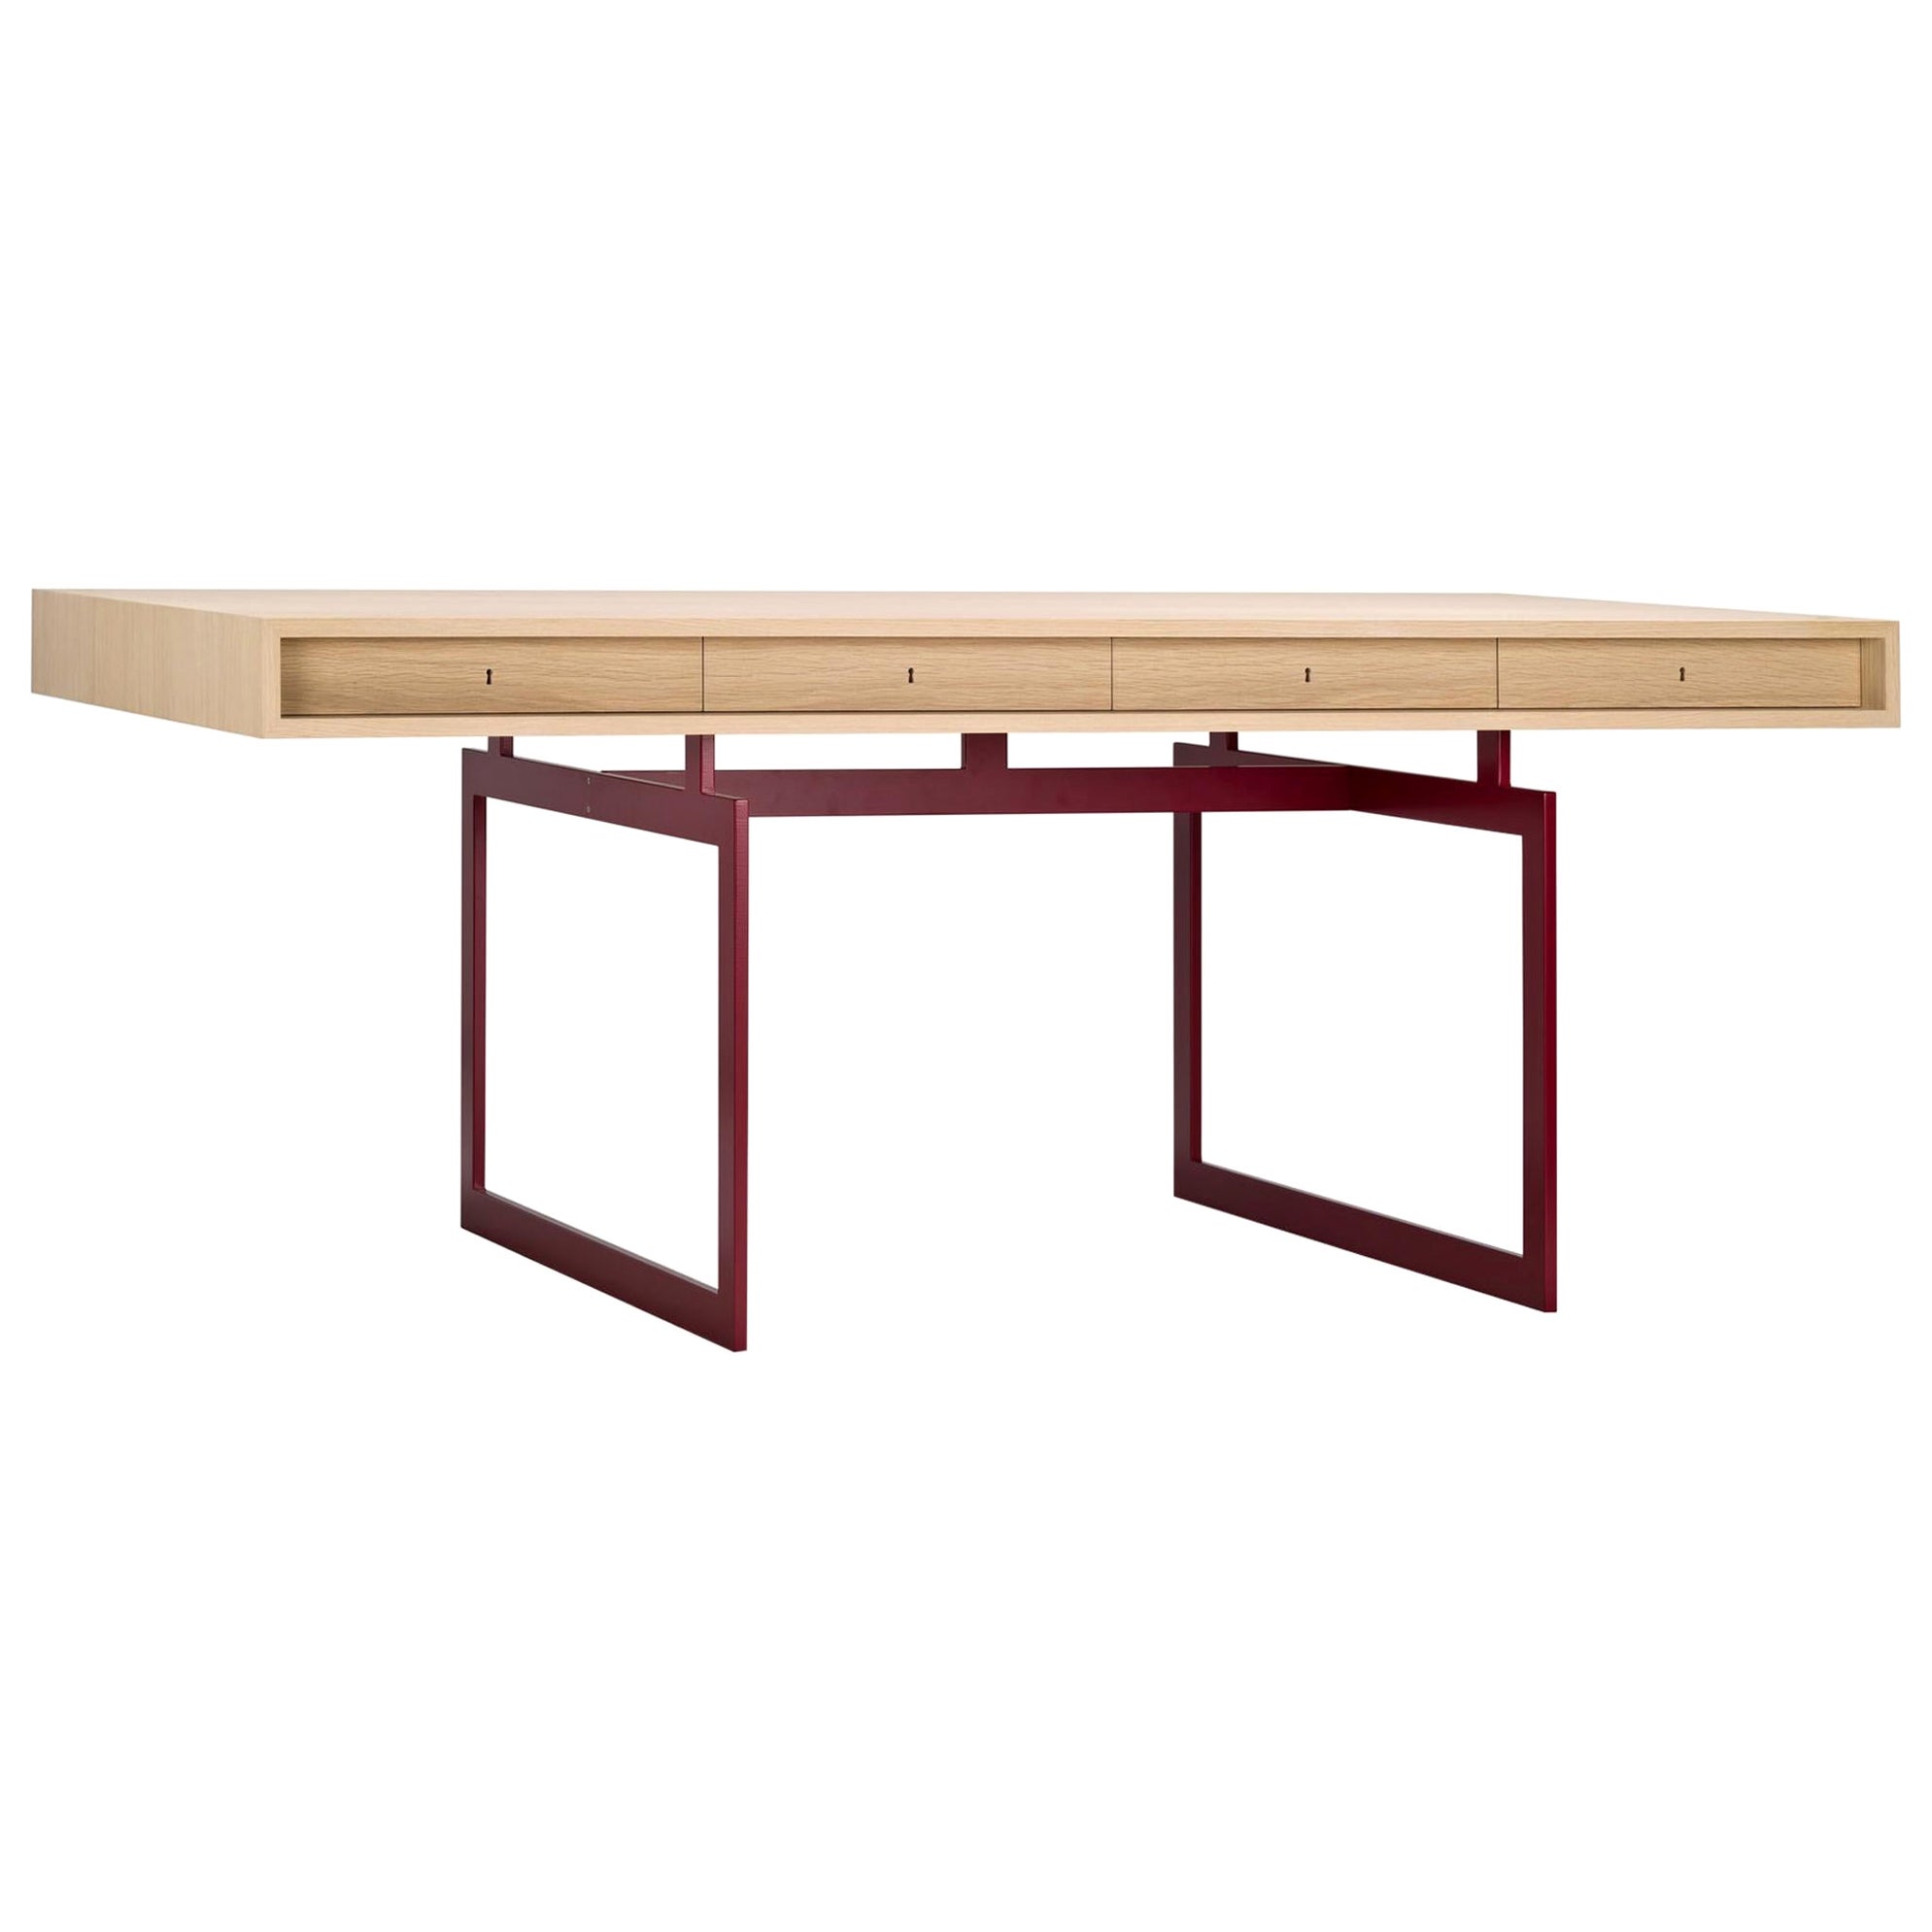 Bodil Kjær Office Desk Table, Wood and Steel by Karakter For Sale